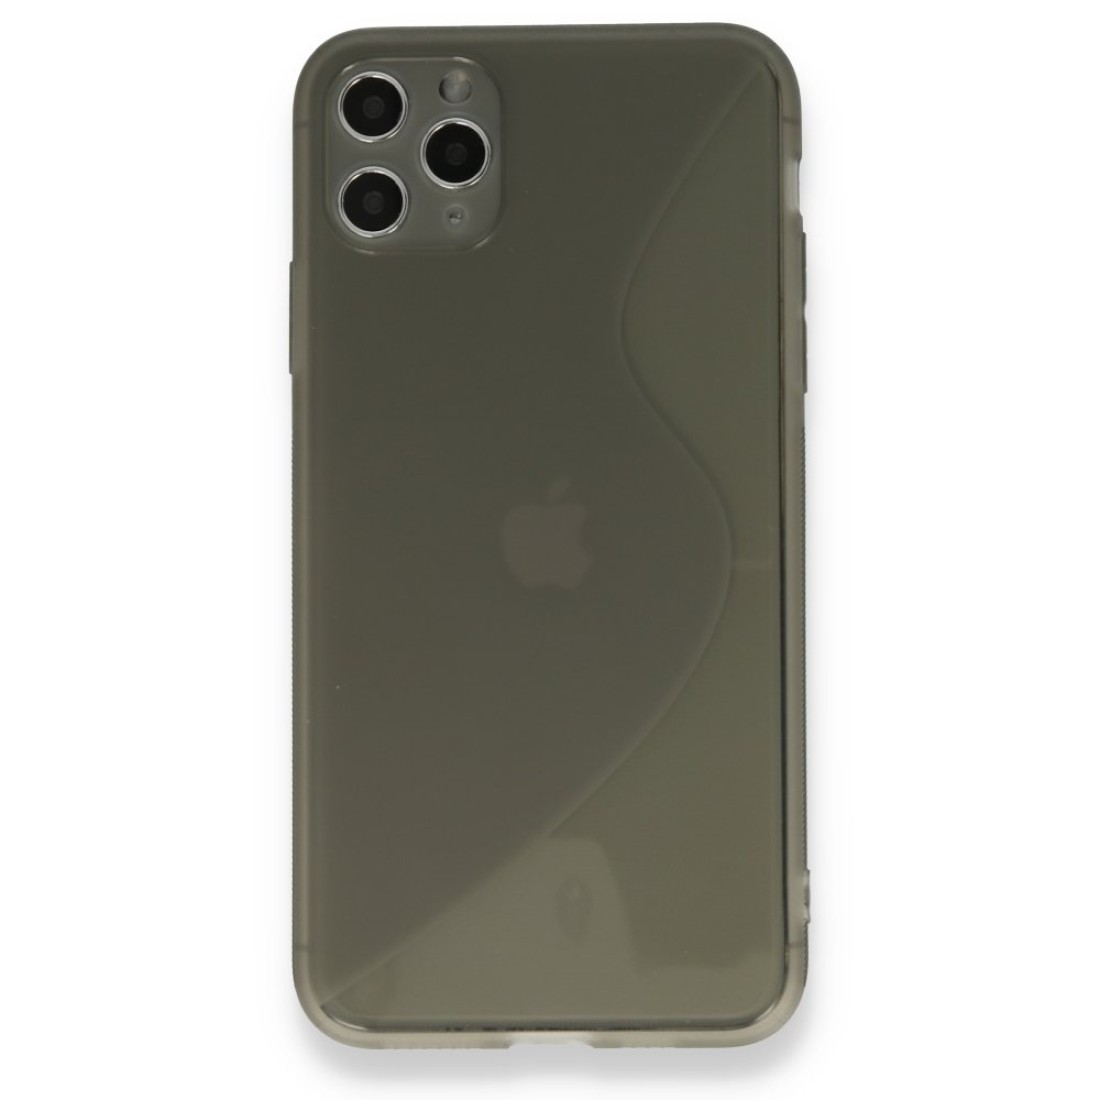 Apple iPhone 11 Pro Kılıf S Silikon - Gri